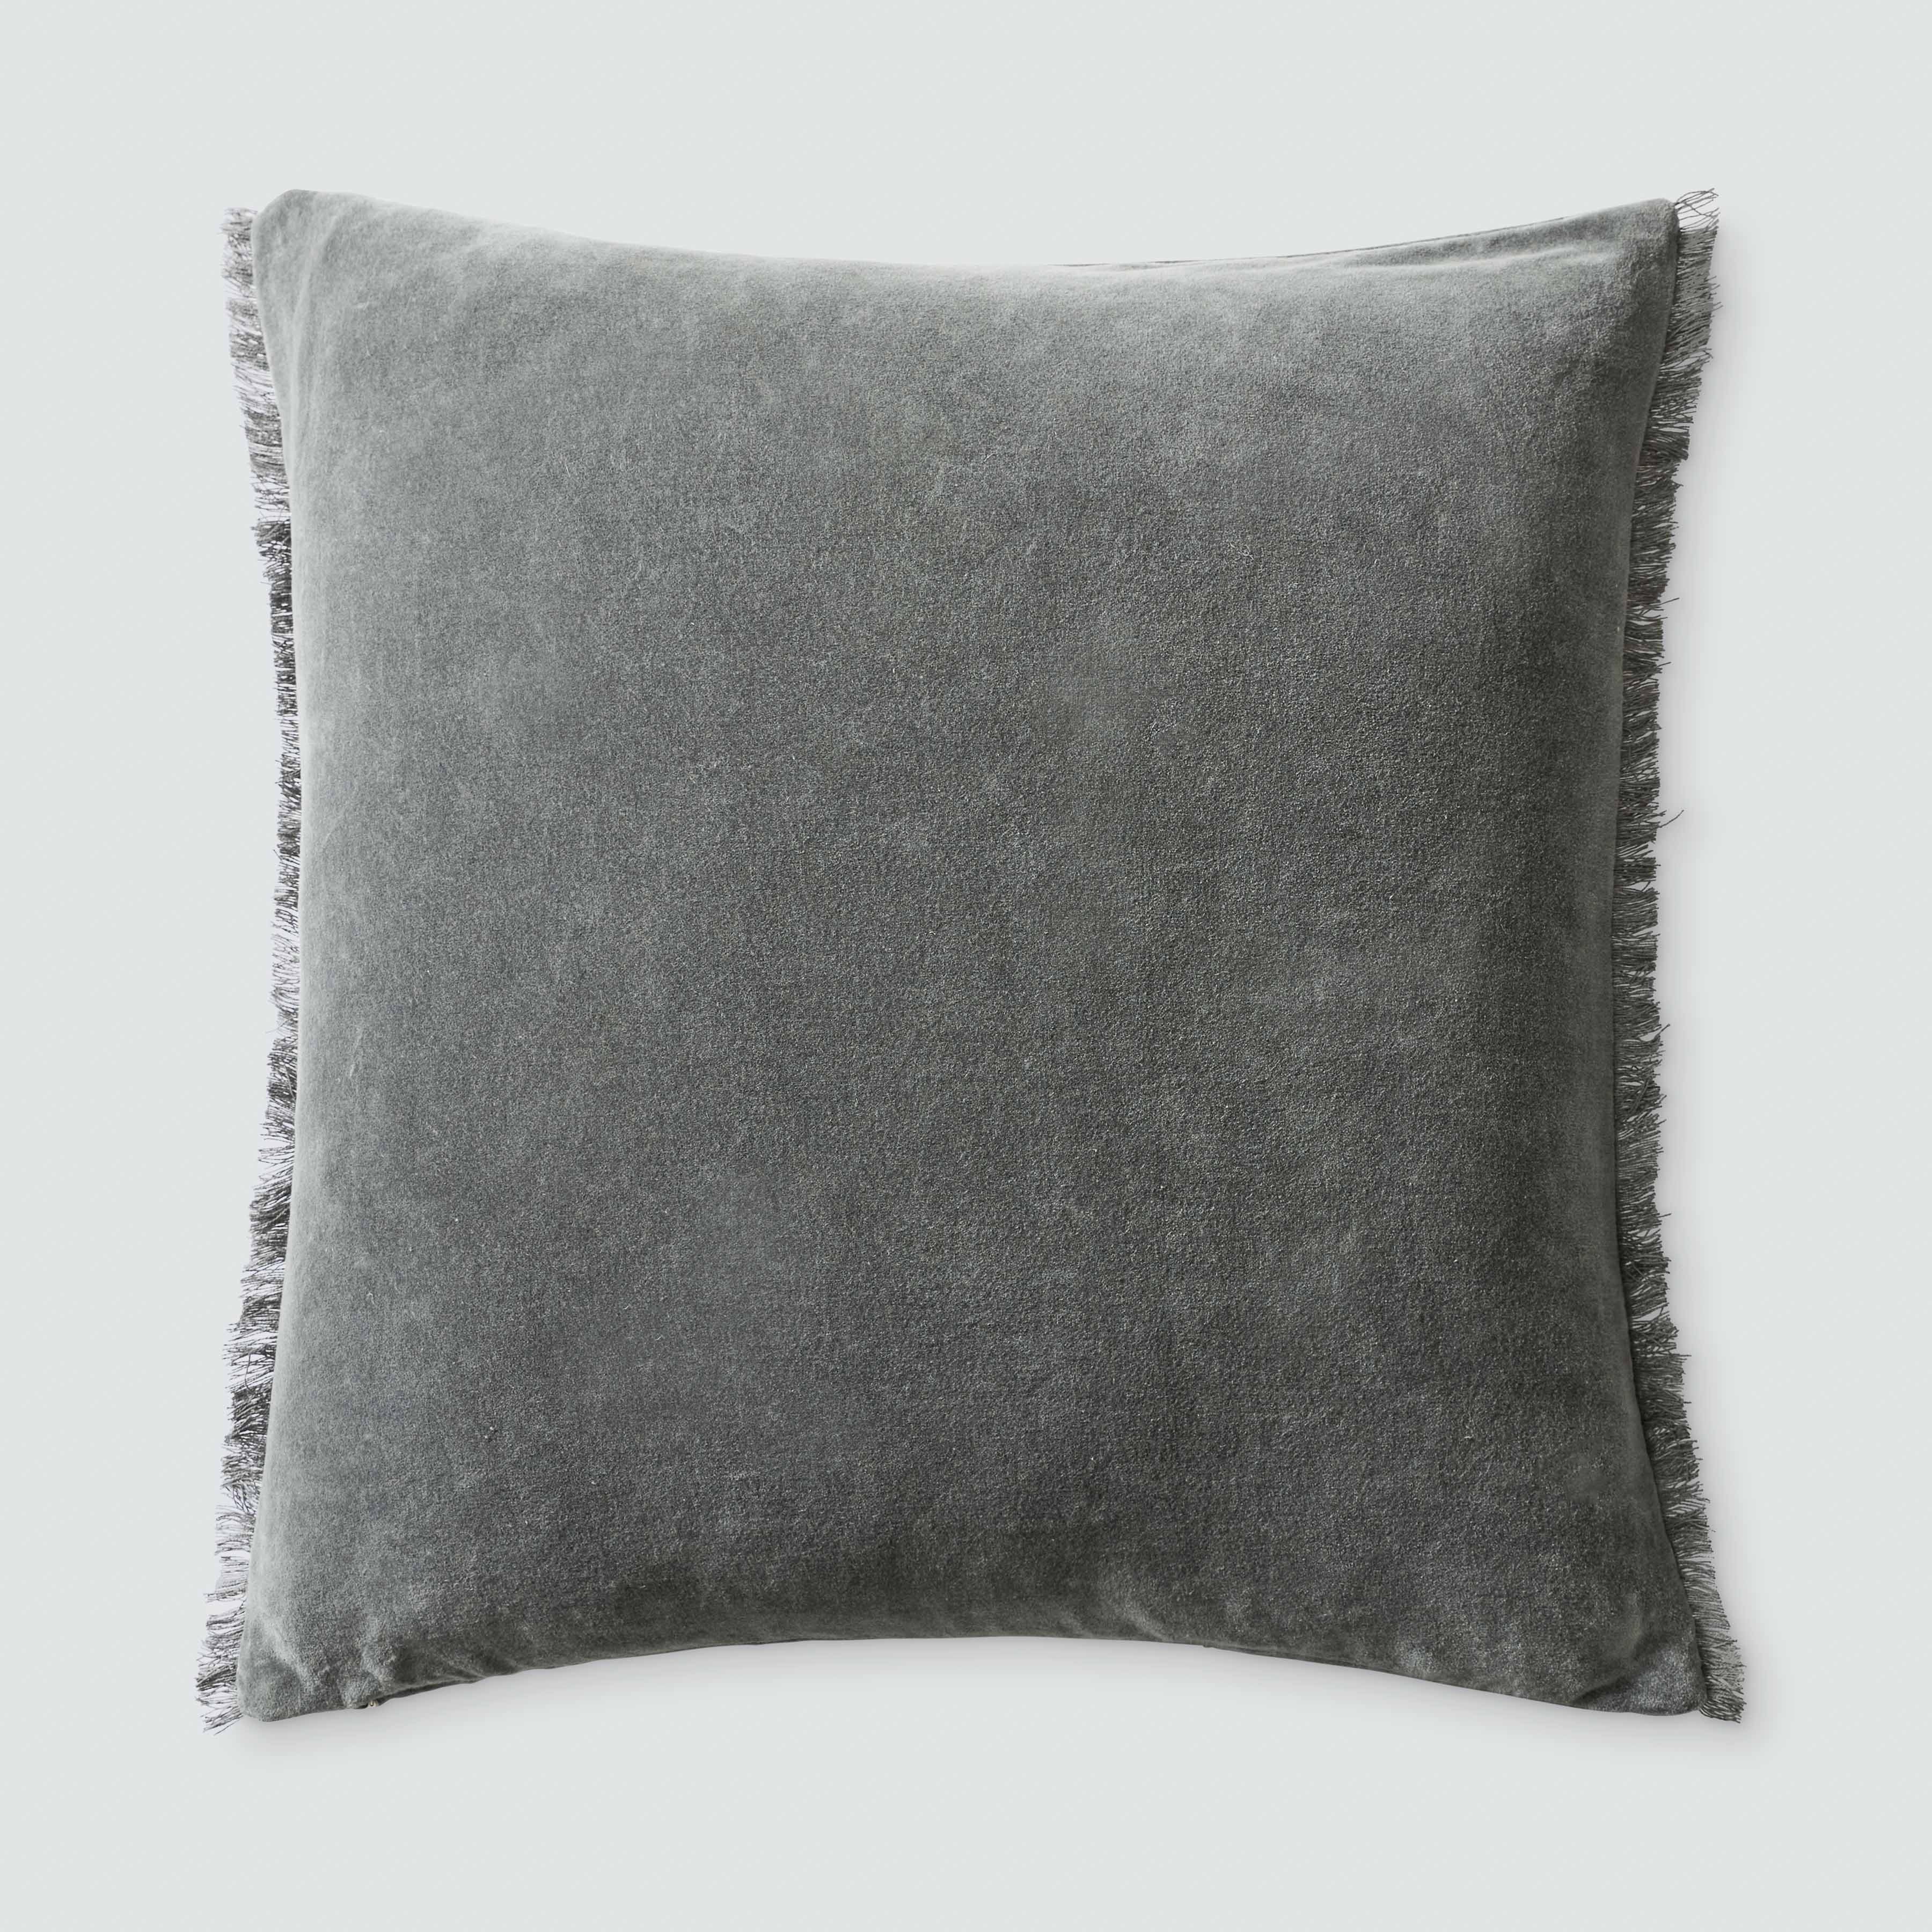 The Citizenry Naveta Velvet Pillow | 18" x 18" | Camel - Image 3